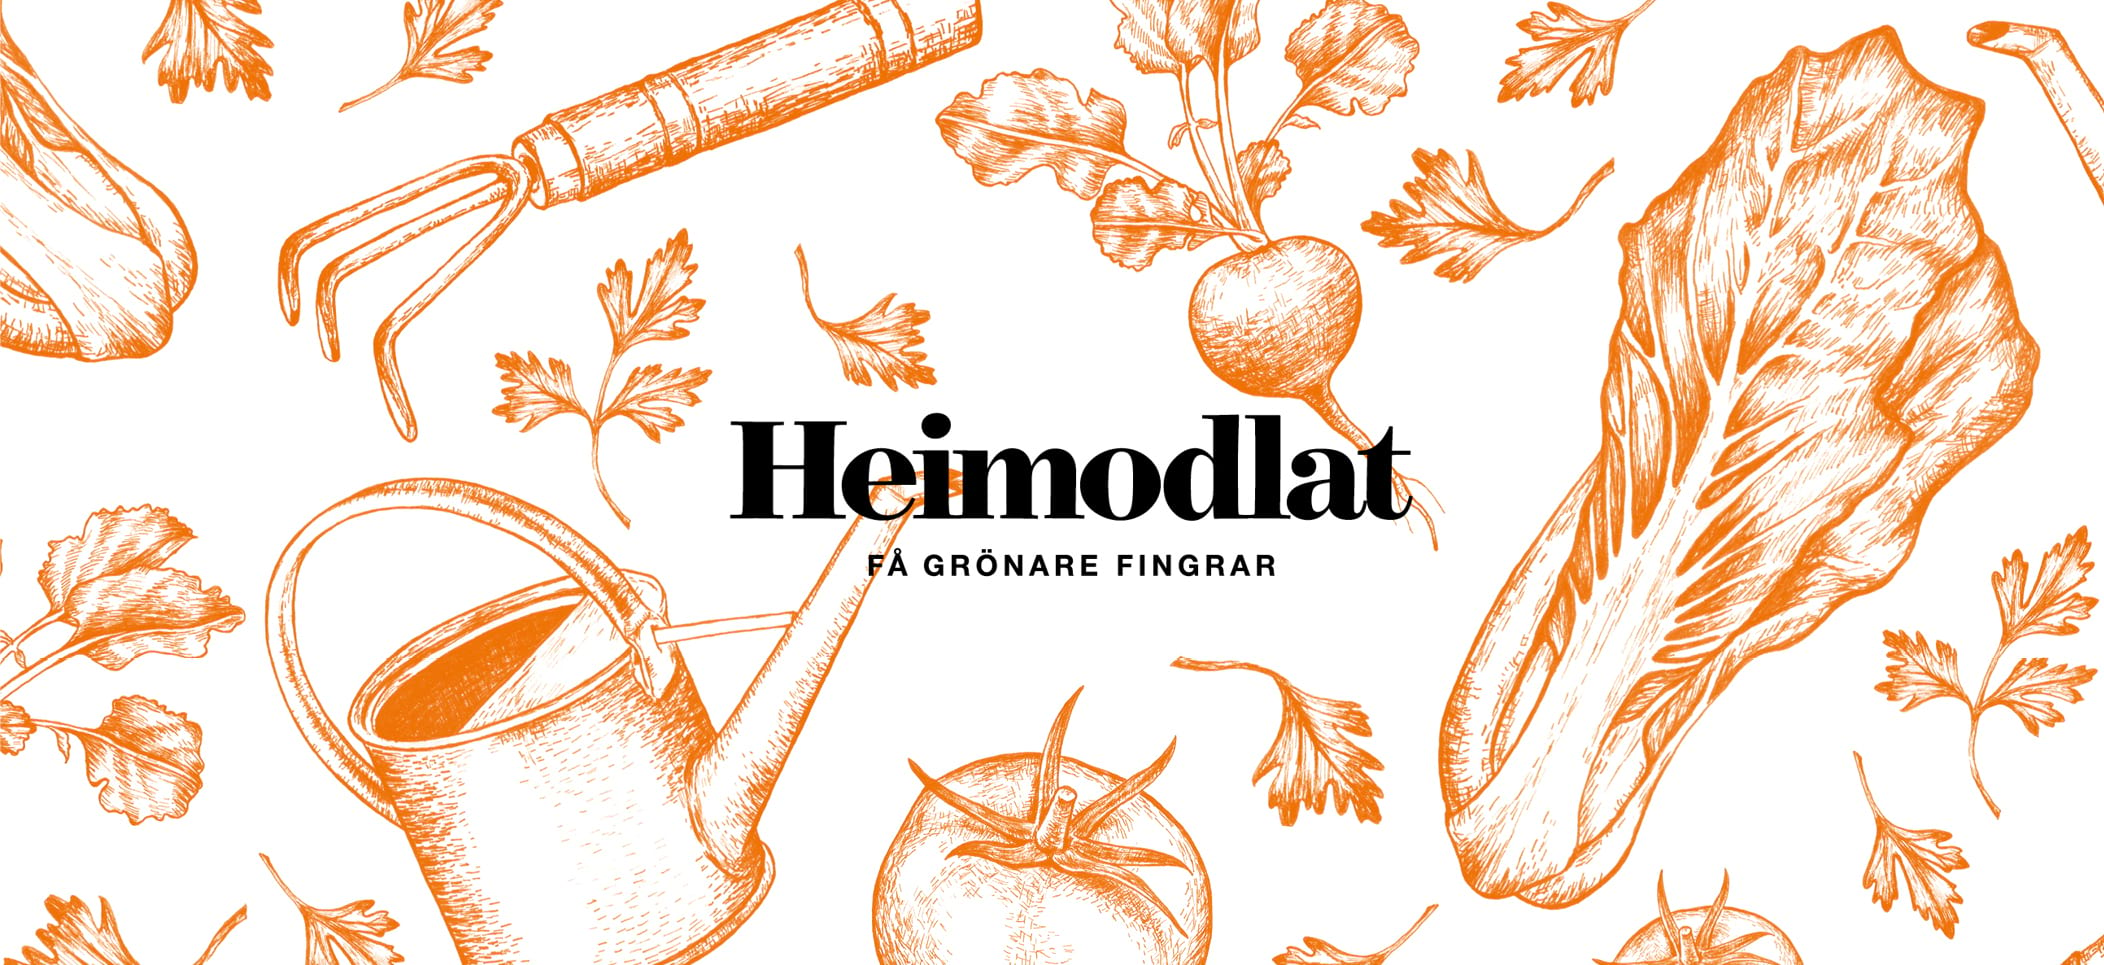 Illustrerad reklam i oranget för Heimstadens kampanj Heimodlat